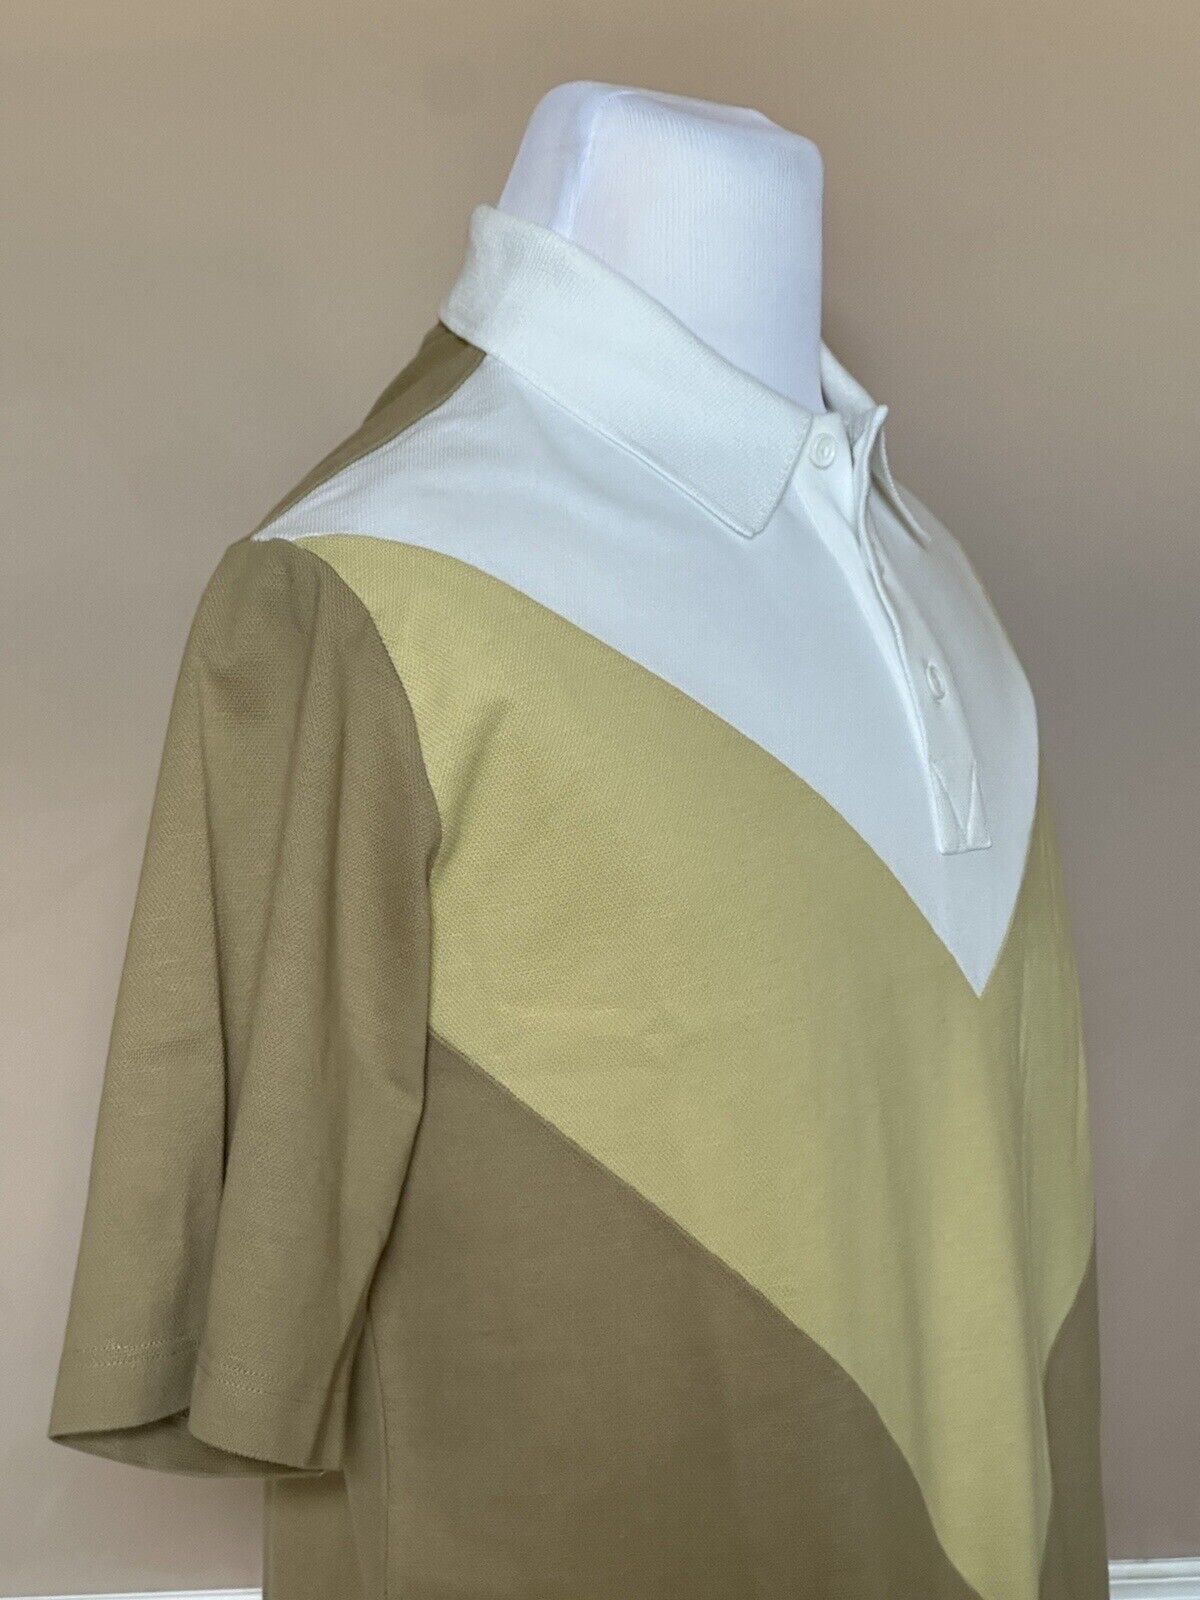 NWT $700 Bottega Veneta Men’s Cotton Piquet Polo Shirt S (Oversized Fit) 704205